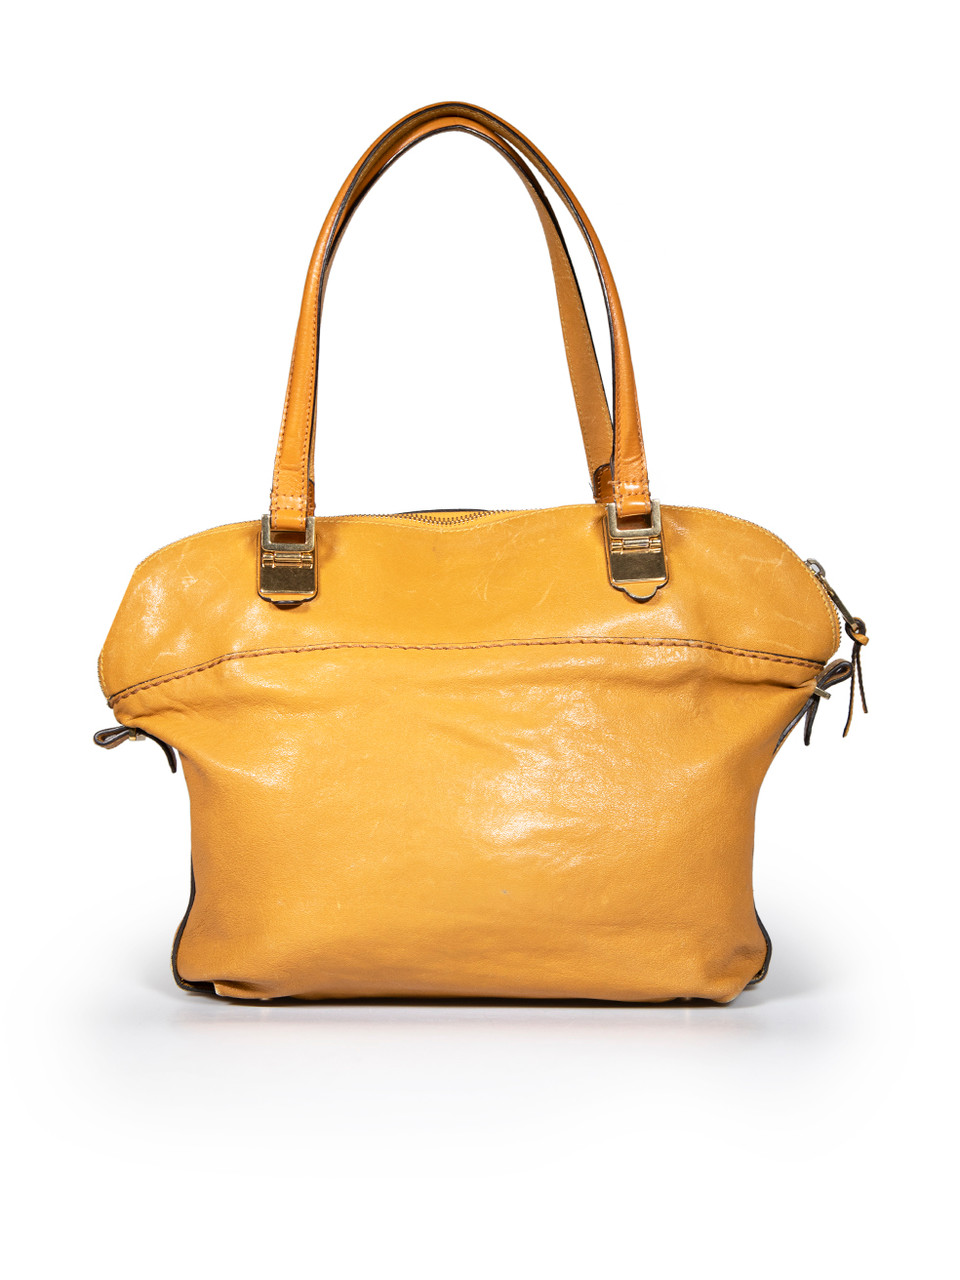 Chloé Camel Leather Angie Handbag